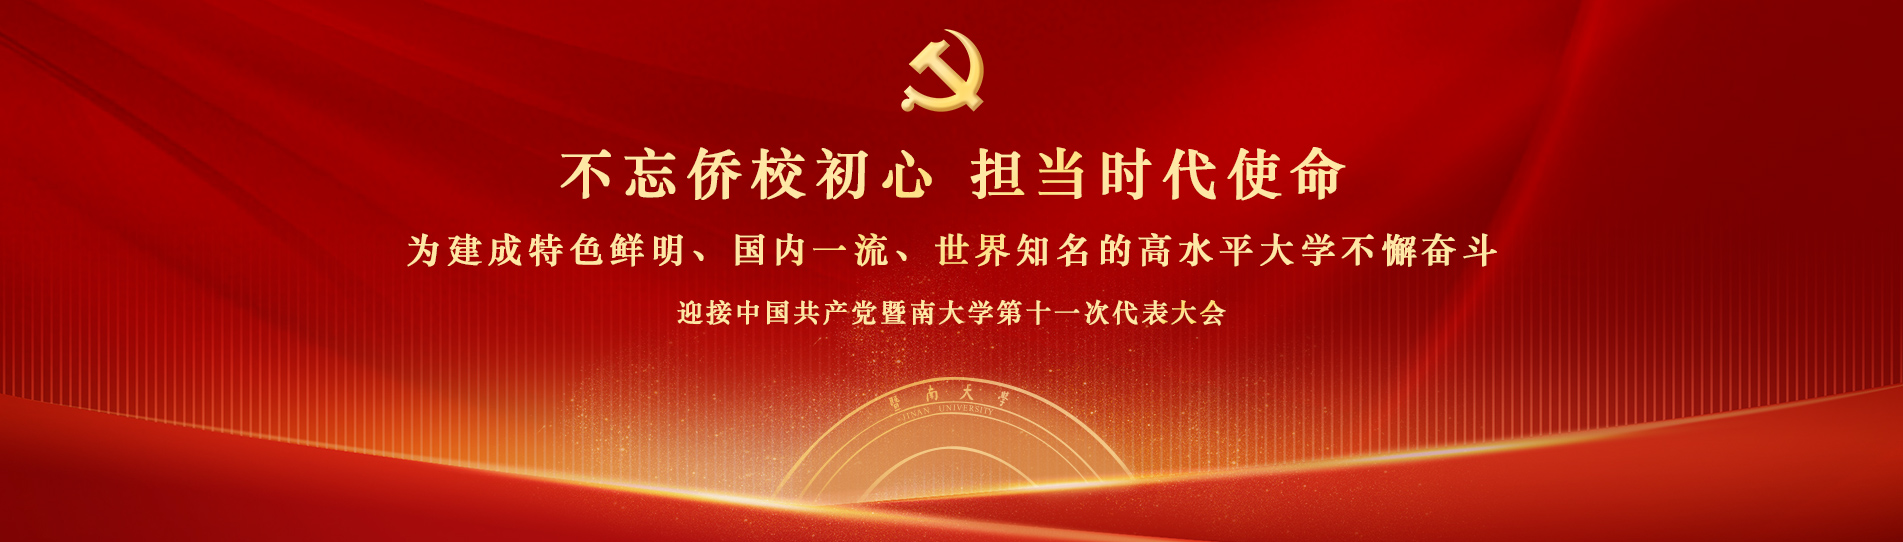 迎接中国共产党暨南大学第十一次代表大会